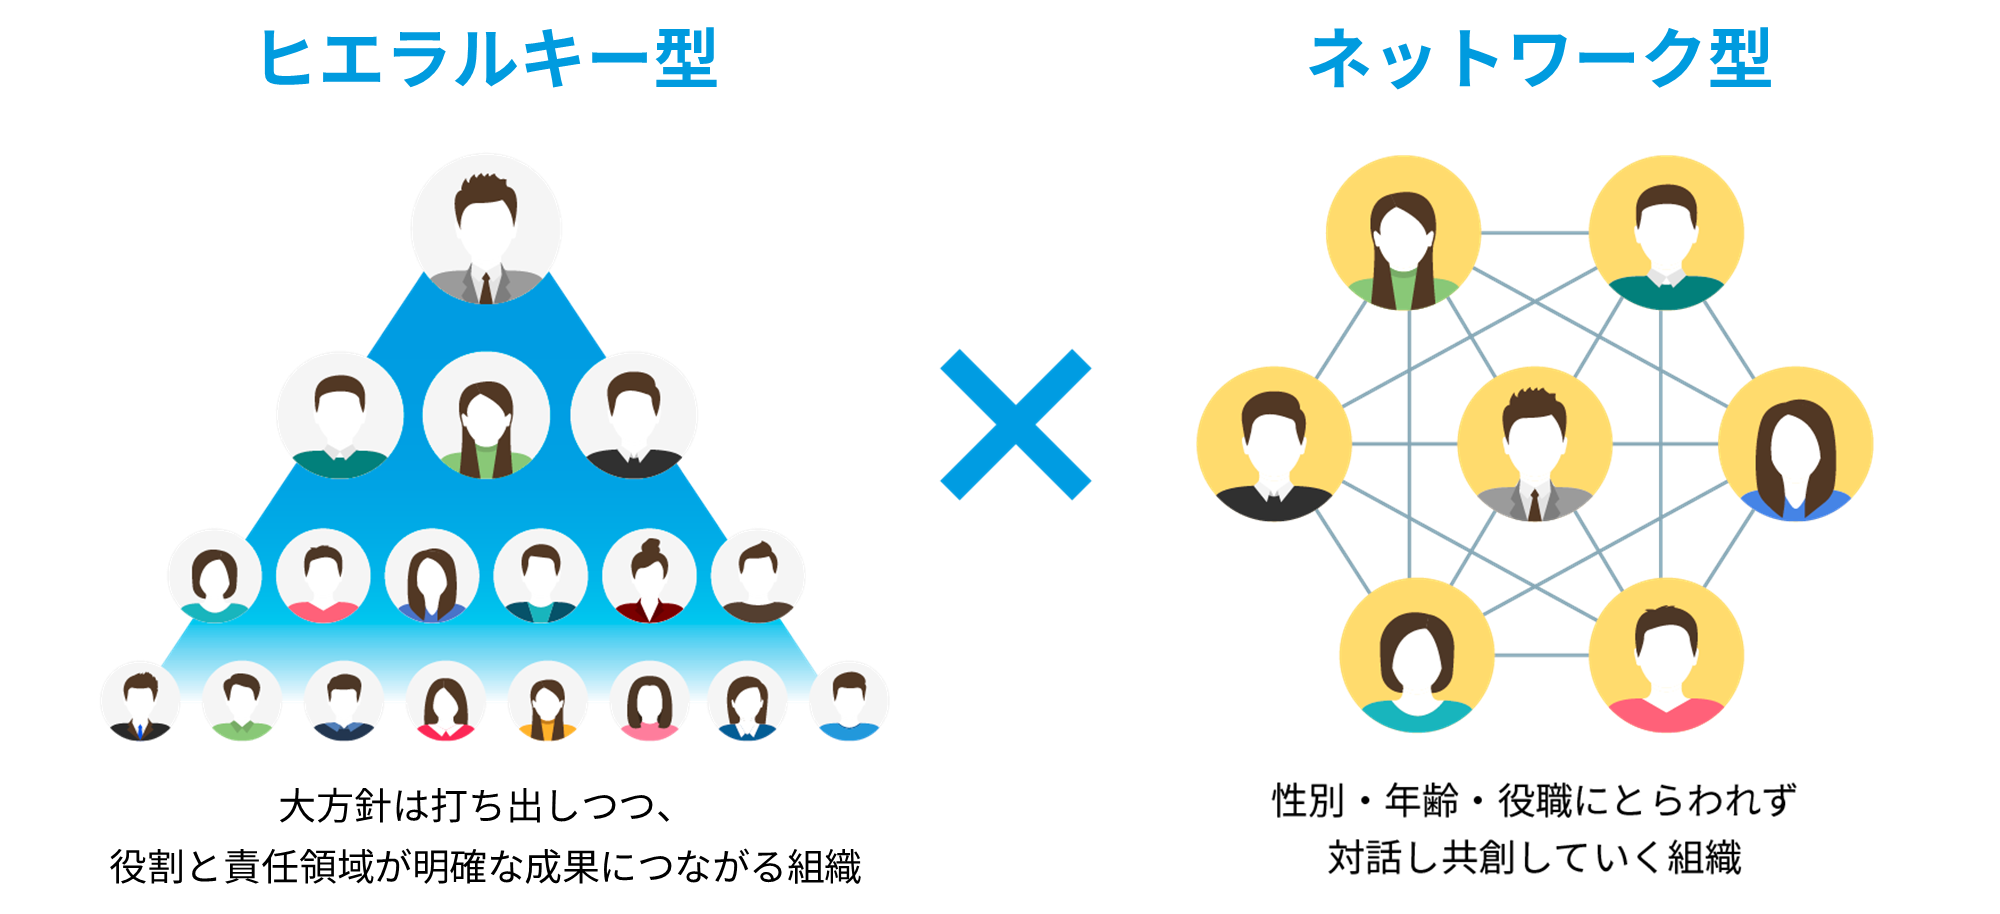 一人一人の個性を十分に仕事に発揮できるよう、プロジェクトごとに各部門からふさわしいメンバーを集め、チーム一丸となって取り組む「ネットワーク型」を採用しています。